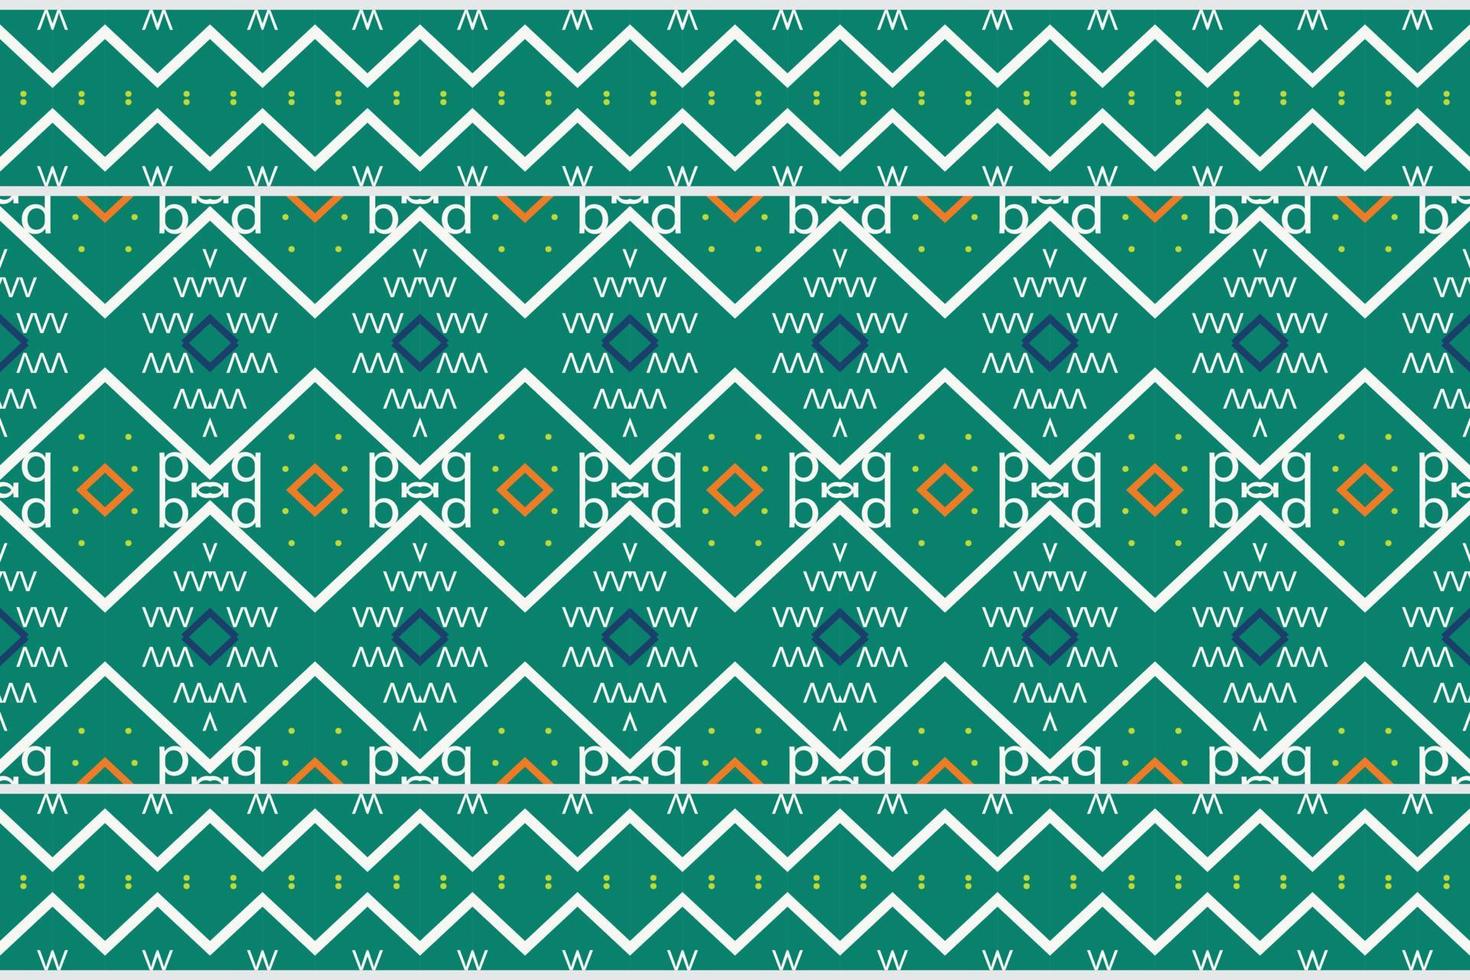 africain ethnique damassé sans couture modèle Contexte. géométrique ethnique Oriental modèle traditionnel. ethnique aztèque style abstrait vecteur illustration. conception pour impression texture, tissu, sari, sari, tapis.